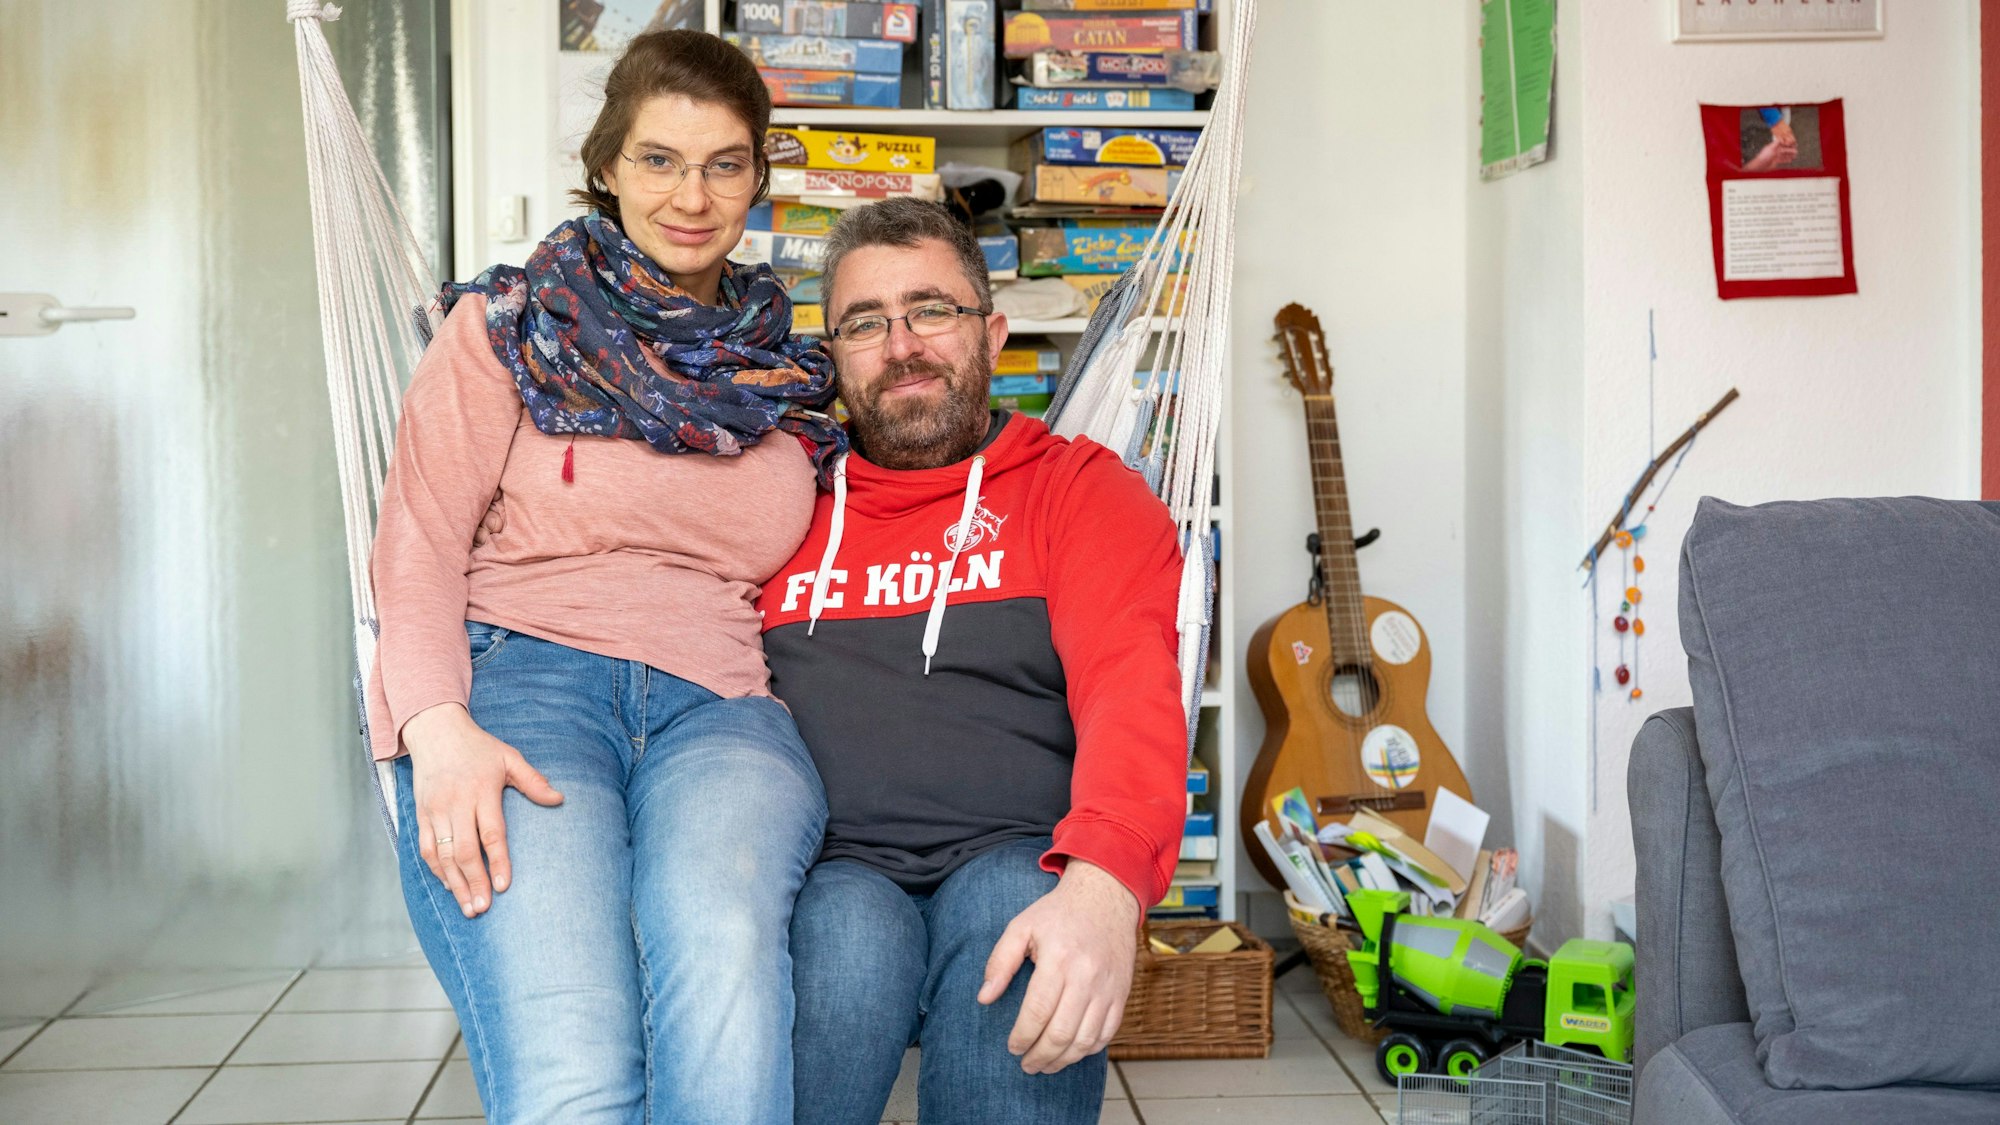 Juliane und Markus Schmitz aus Bergisch Gladbach sprechen über Gleichstellung in der Beziehung. Die beiden sind in ihrer Wohnung zu sehen.